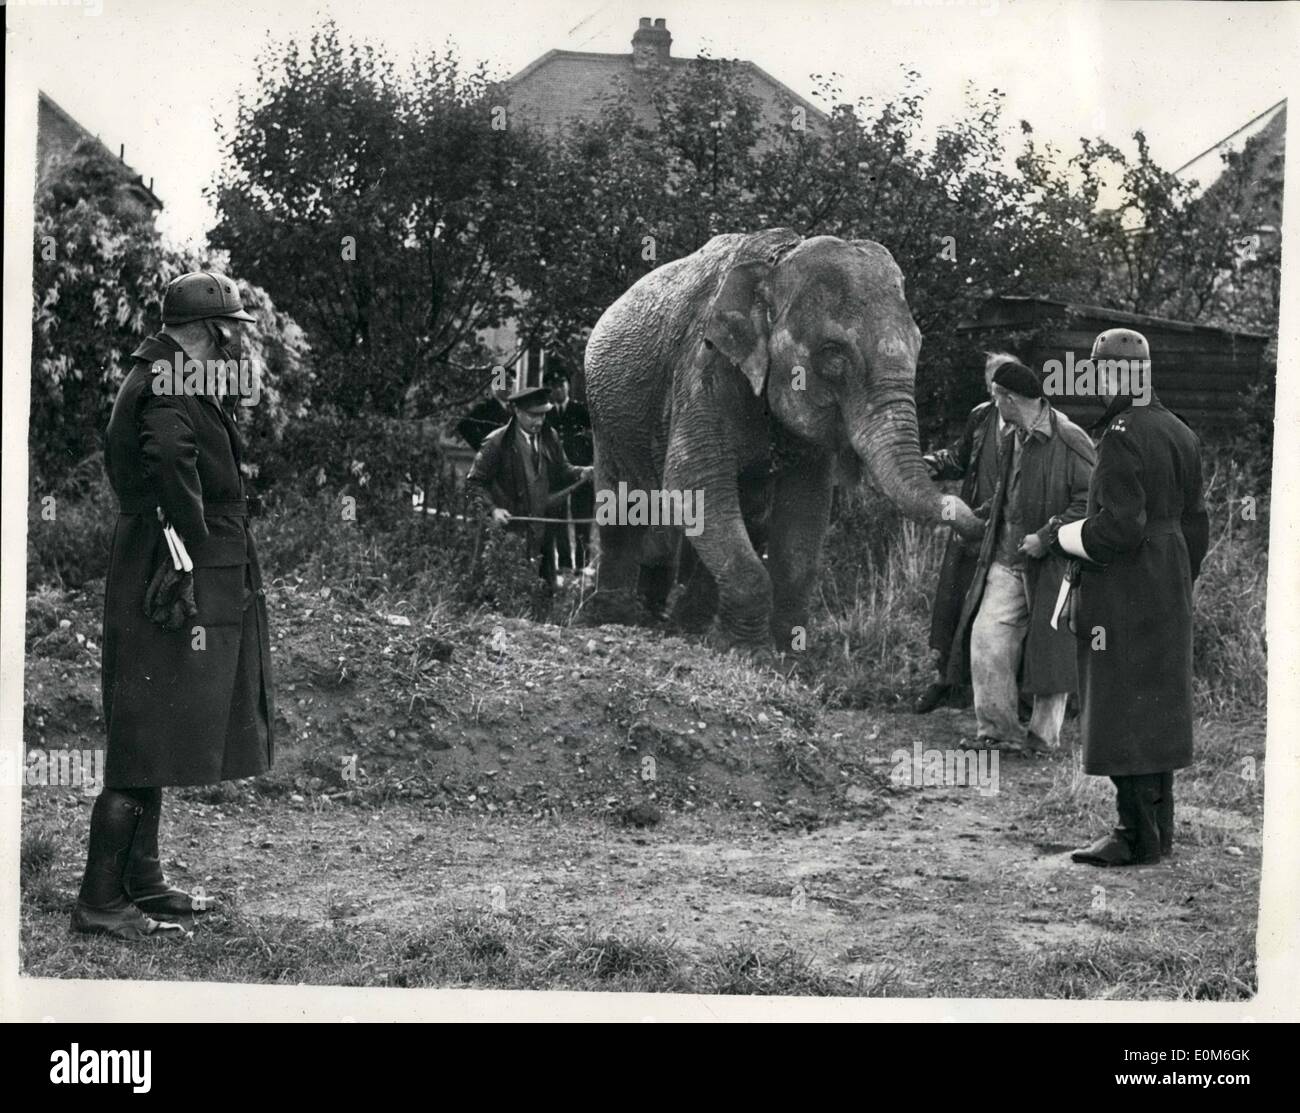 Sept. 09, 1953 - Elefanten an der Unterseite seines Gartens. Juno mag ein bisschen Obst.: Wenn Mr.Alex Smith, Buchhalter, erwachte in seinem Haus in Smerset Avenue, Hock, Surrey, heute Morgen er traute Bot hie Augen - an der Unterseite seines Gartens war ein echtes live Elefant - Äpfel knabbern. Der Elefant war Juno ein 10 ff. hohe weibliche Zirkus Elefant wann ging zu einem Spaziergang auf eigene Faust wenn Chessington Zoo - entlang der Kinston Bypass entnommen wird also an Bord ein Zuges in Esher - her Brighton. Sie war bald wieder in Einklang gebracht. Foto zeigt nach dem ihren Topf mit Obst in Herrn Stockfoto